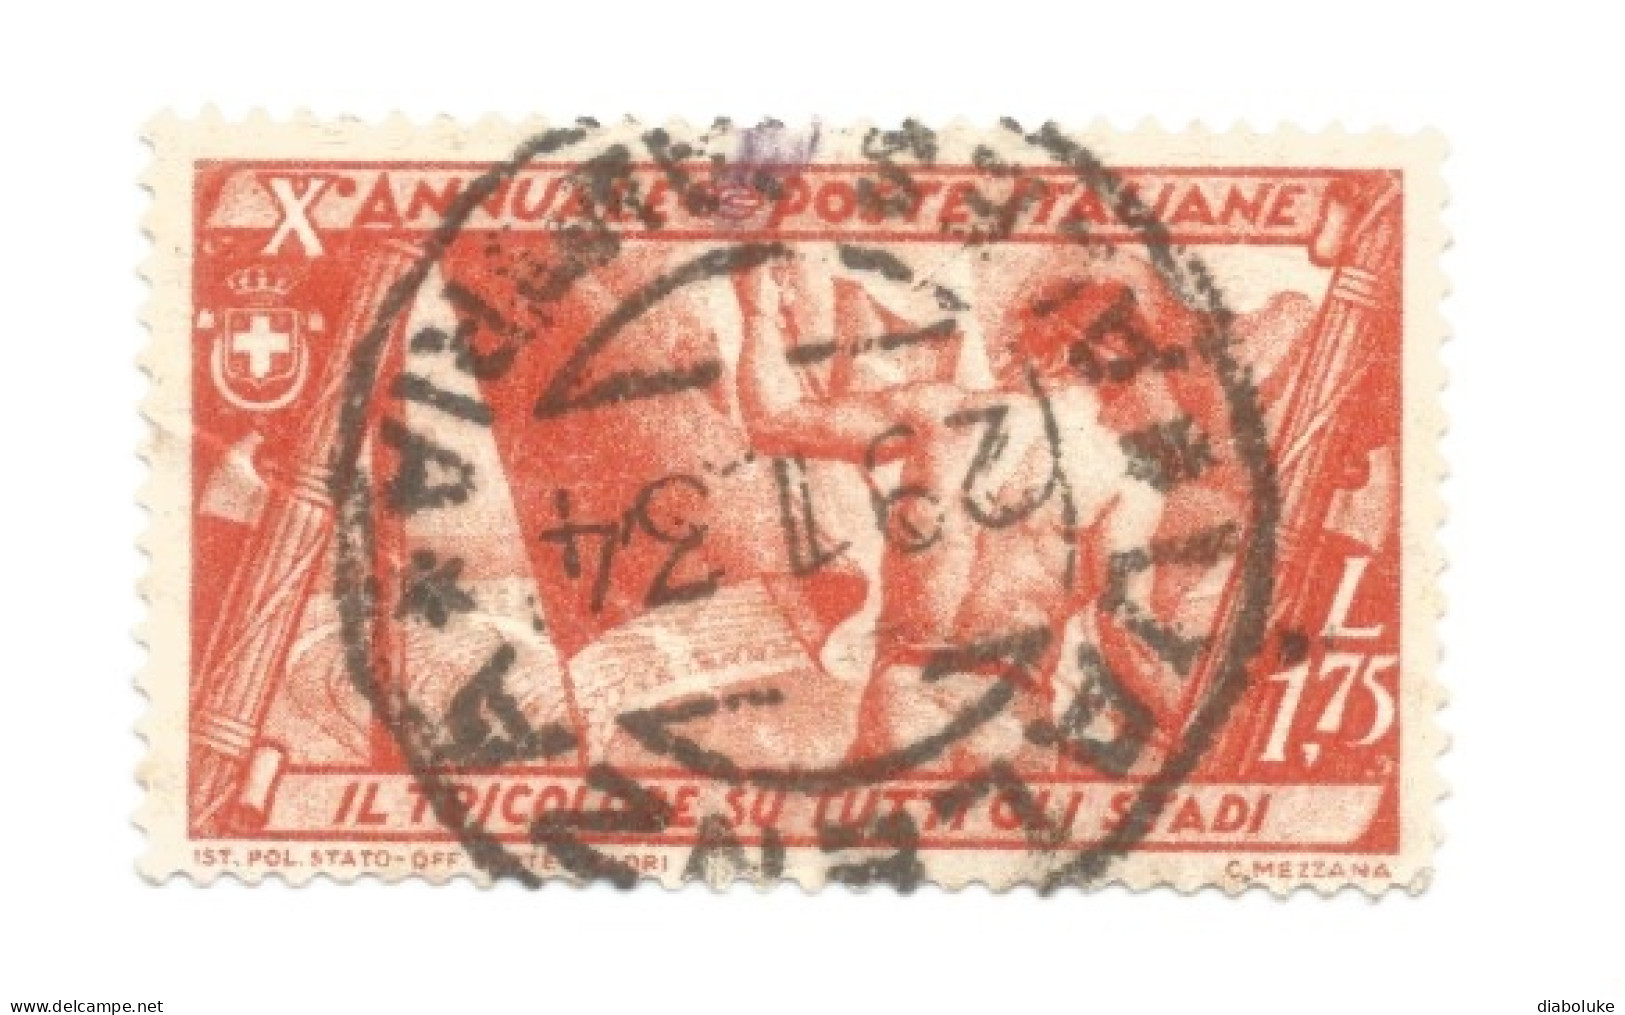 (REGNO D'ITALIA), 1932, MARCIA SU ROMA - Serietta di 9 francobolli usati